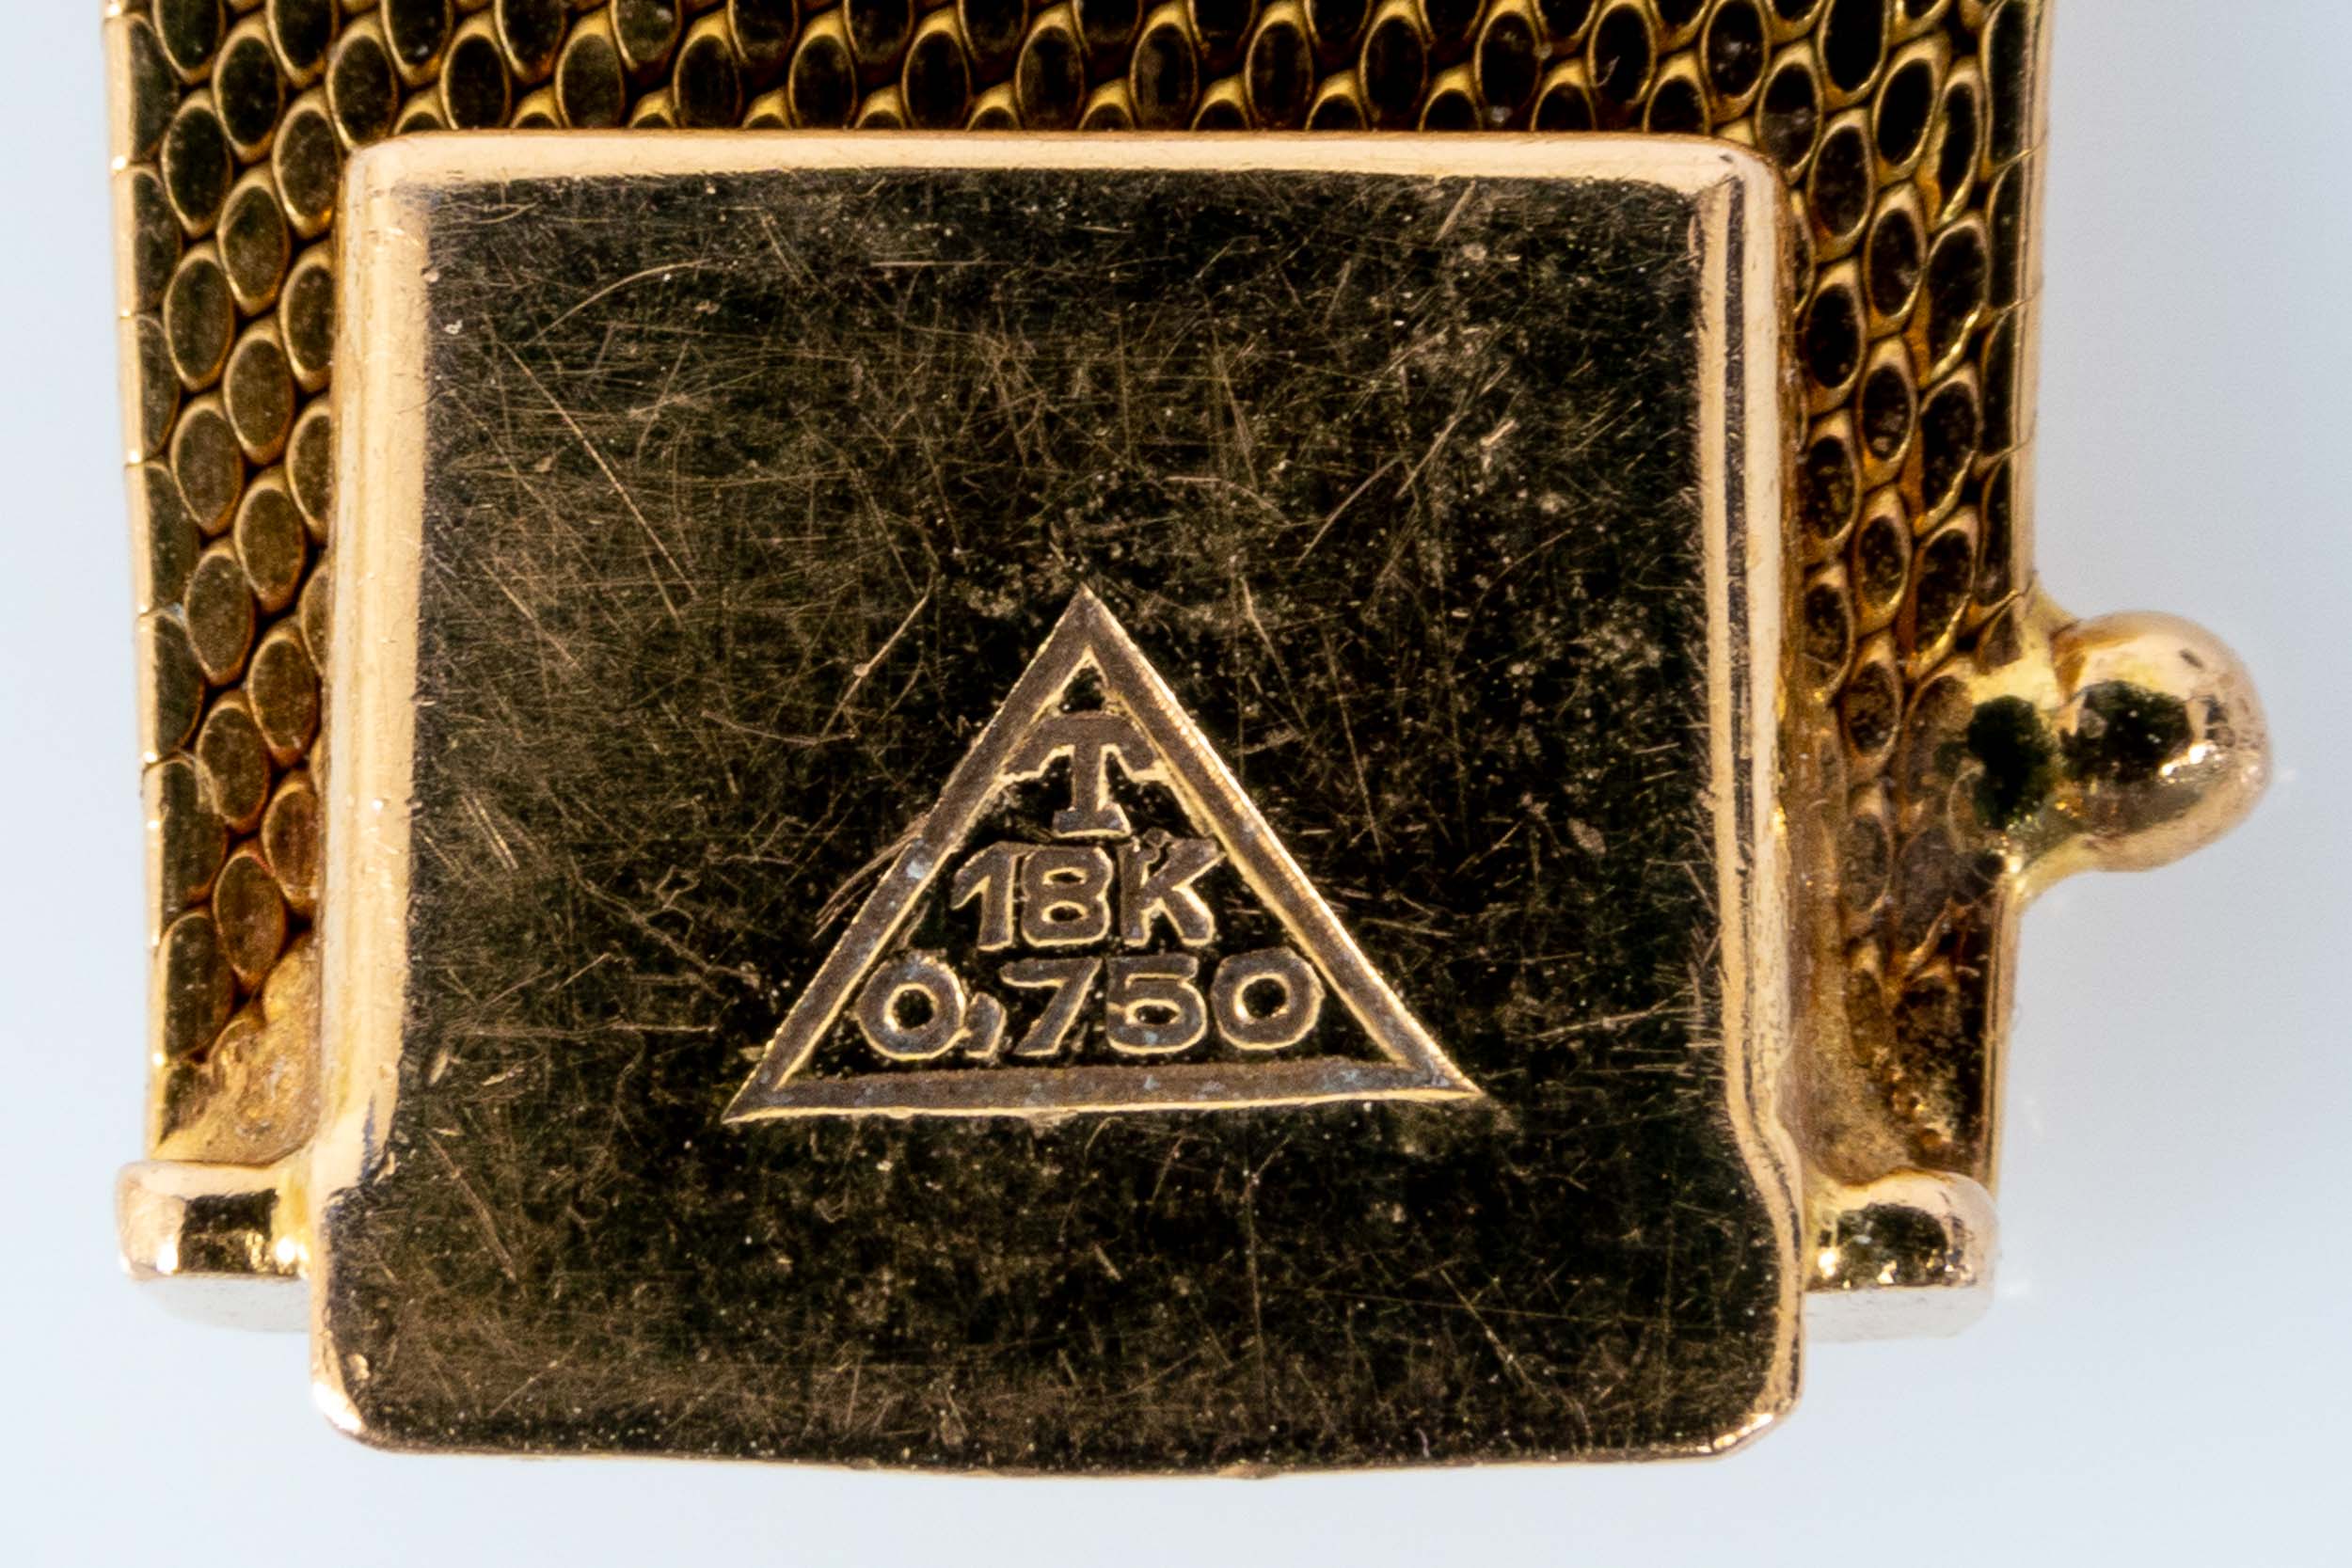 Außergewöhnliche Damen- Armbanduhr, das zur Mitte hin breiter werdende, in Hammerschlagoptik gearbe - Image 10 of 11